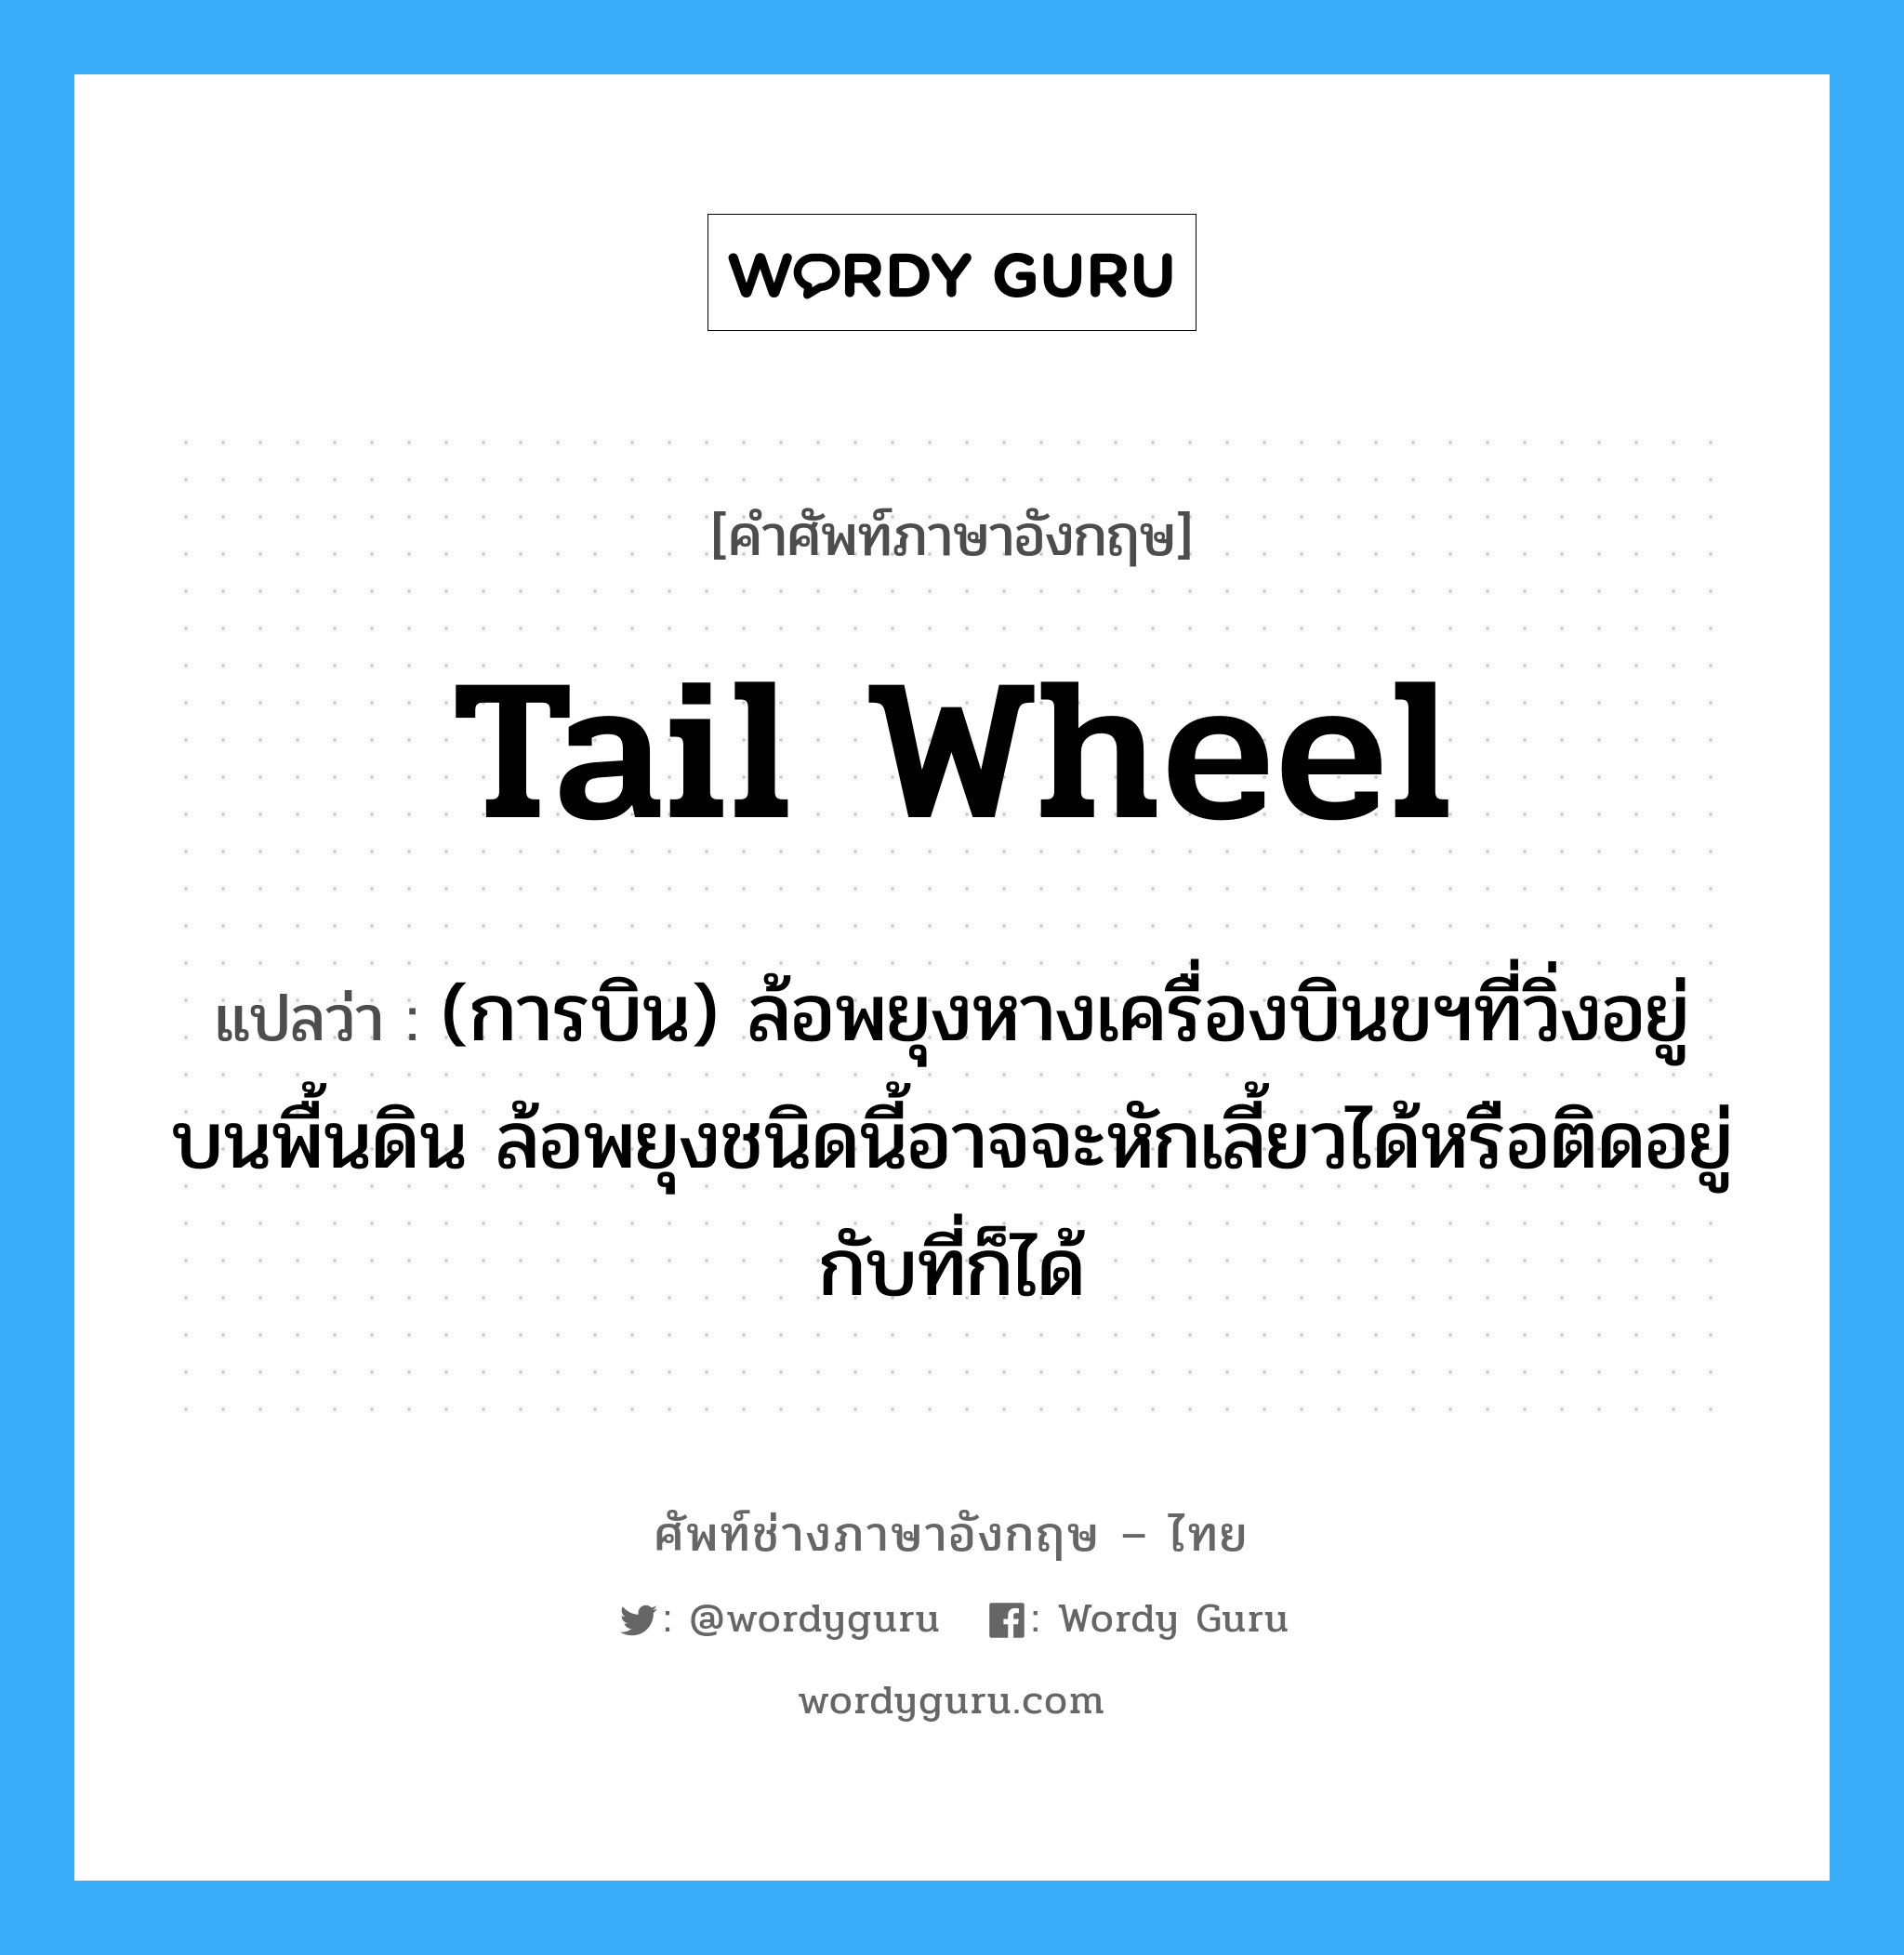 tail wheel แปลว่า?, คำศัพท์ช่างภาษาอังกฤษ - ไทย tail wheel คำศัพท์ภาษาอังกฤษ tail wheel แปลว่า (การบิน) ล้อพยุงหางเครื่องบินขฯที่วิ่งอยู่บนพื้นดิน ล้อพยุงชนิดนี้อาจจะหักเลี้ยวได้หรือติดอยู่กับที่ก็ได้